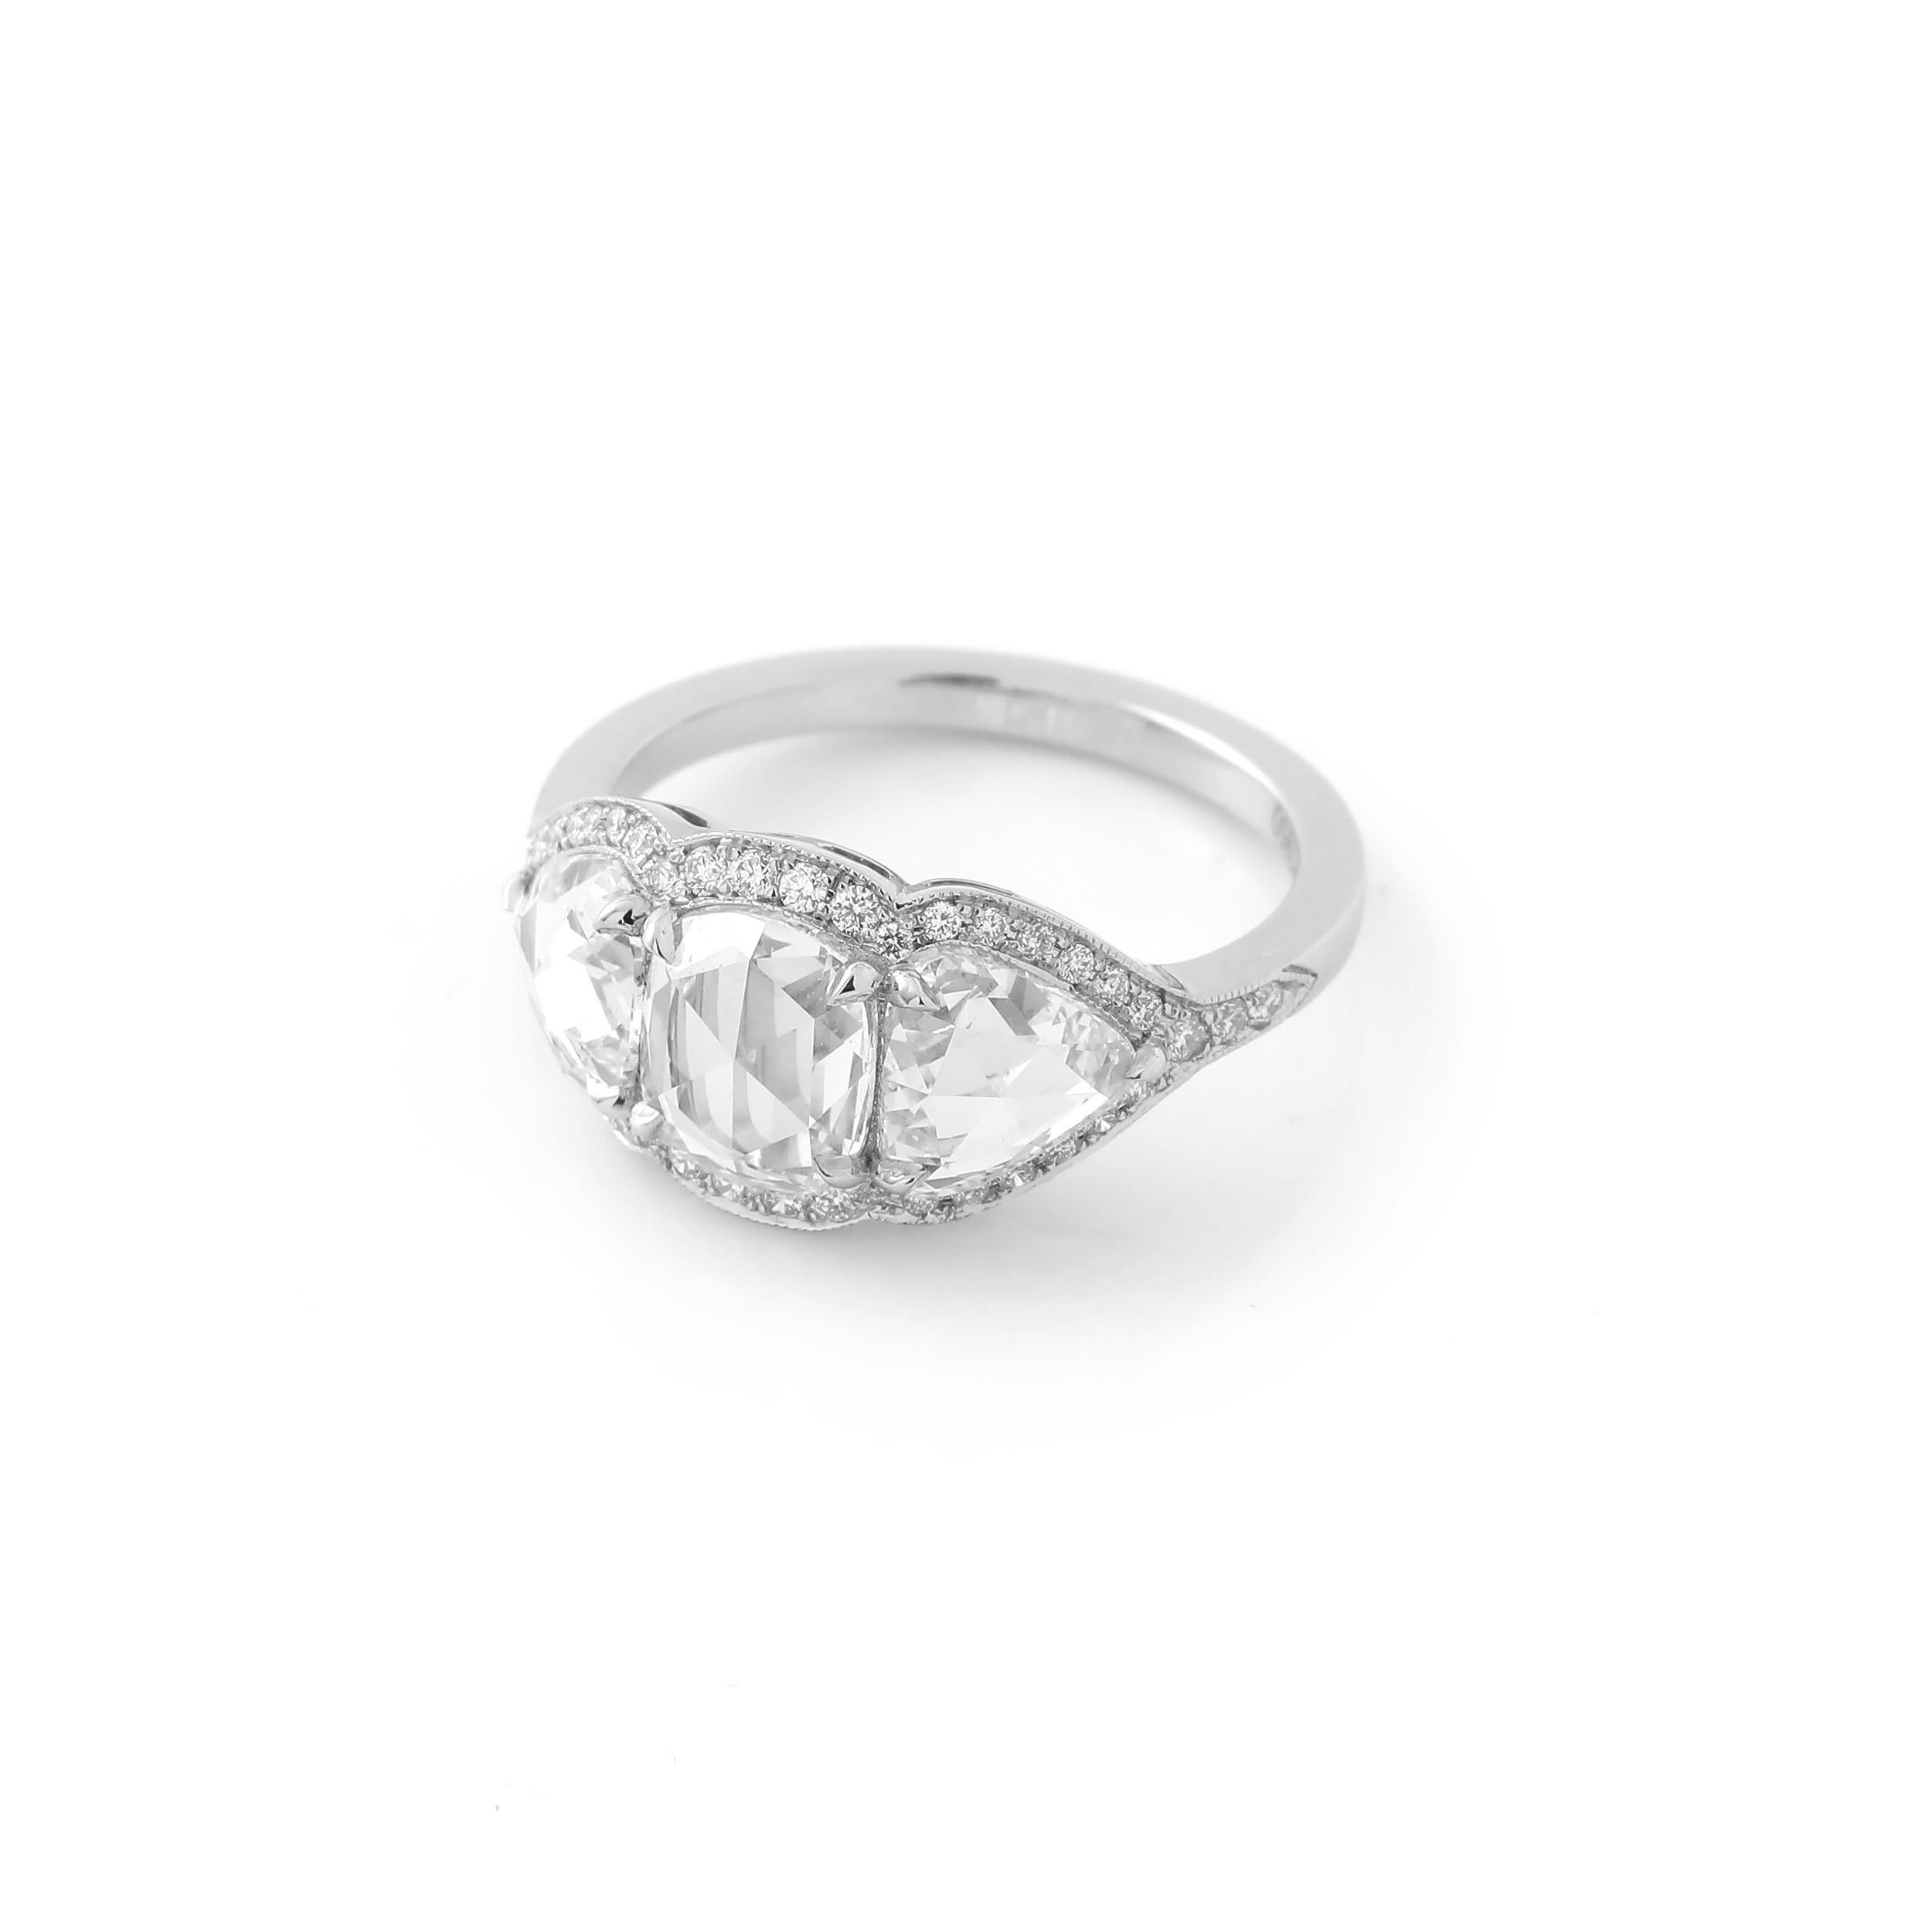 In der Mitte dieses Rings befindet sich ein Diamant im Rosenschliff mit einem Gewicht von 1,12 Karat, an den Seiten ein Paar wunderschön aufeinander abgestimmte Birnen im Rosenschliff mit einem Gewicht von 1,59 Karat. Die Diamanten sind nicht